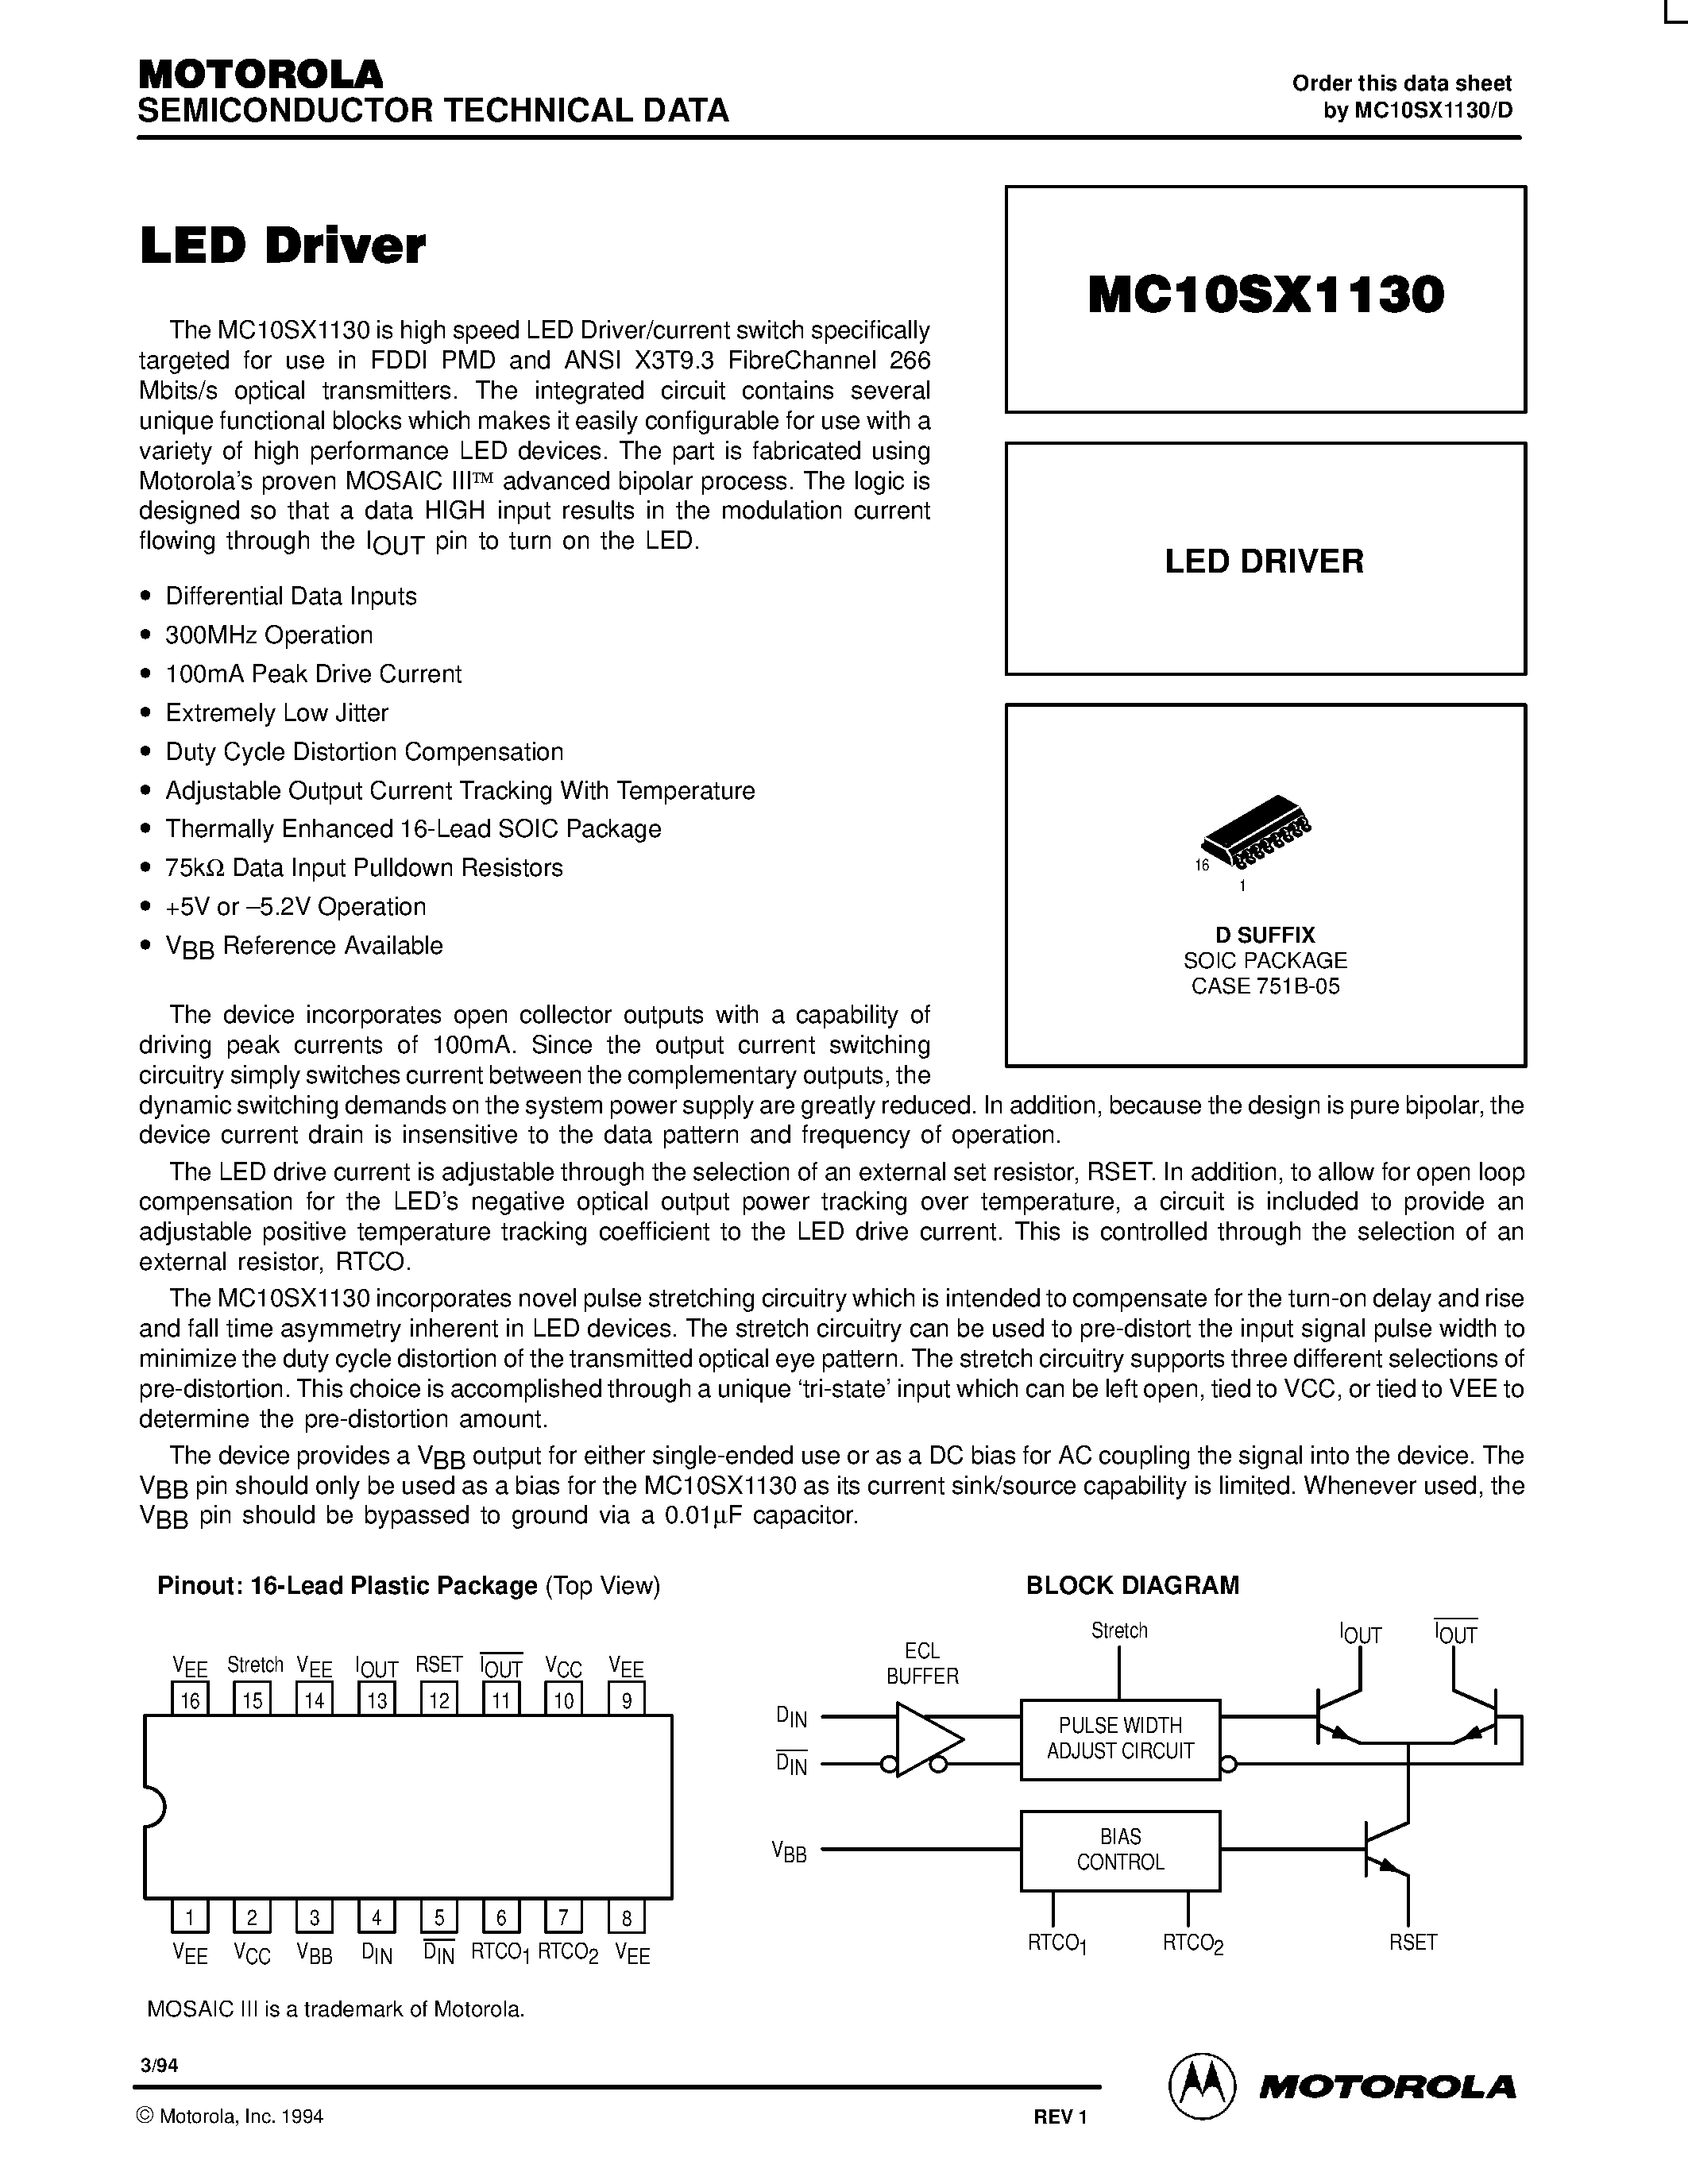 Datasheet MC10SX1130D - LED Driver page 1